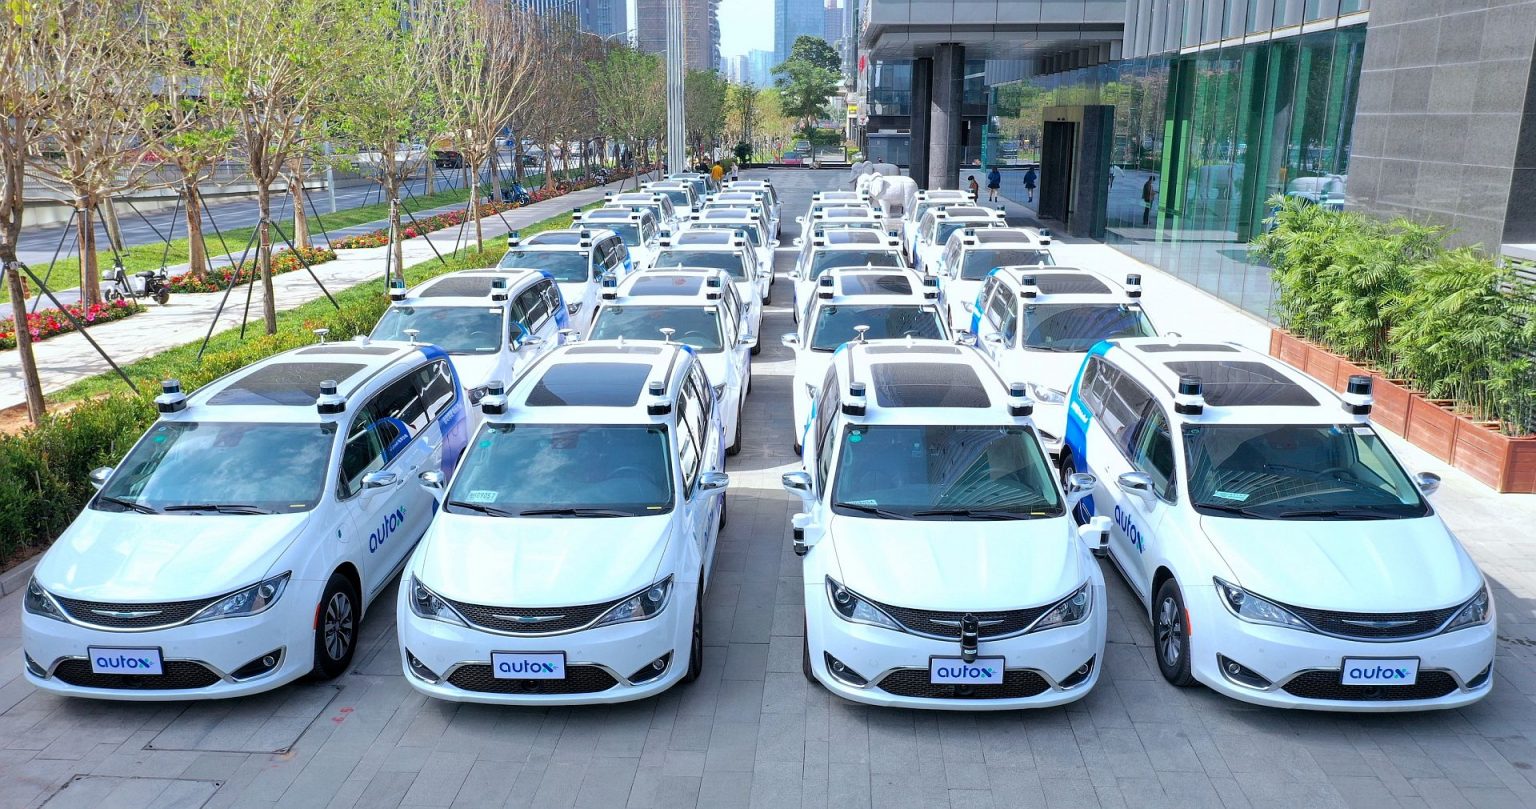 AutoX spustil verejné plne autonómne taxíky. Musíte však spĺňať podmienky